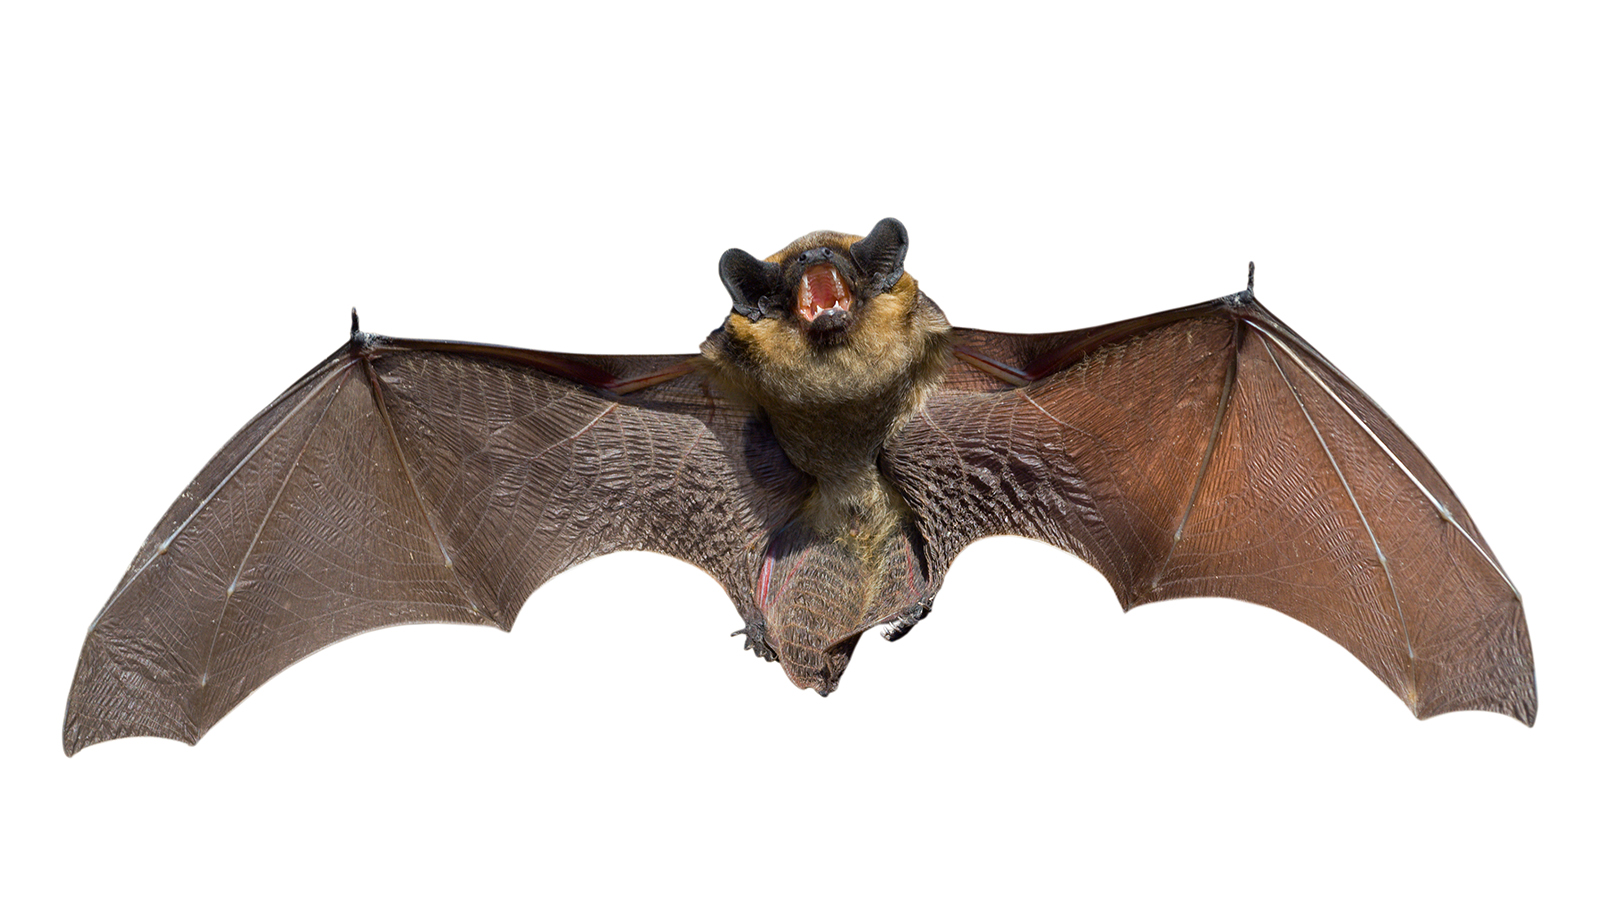 Bats 101